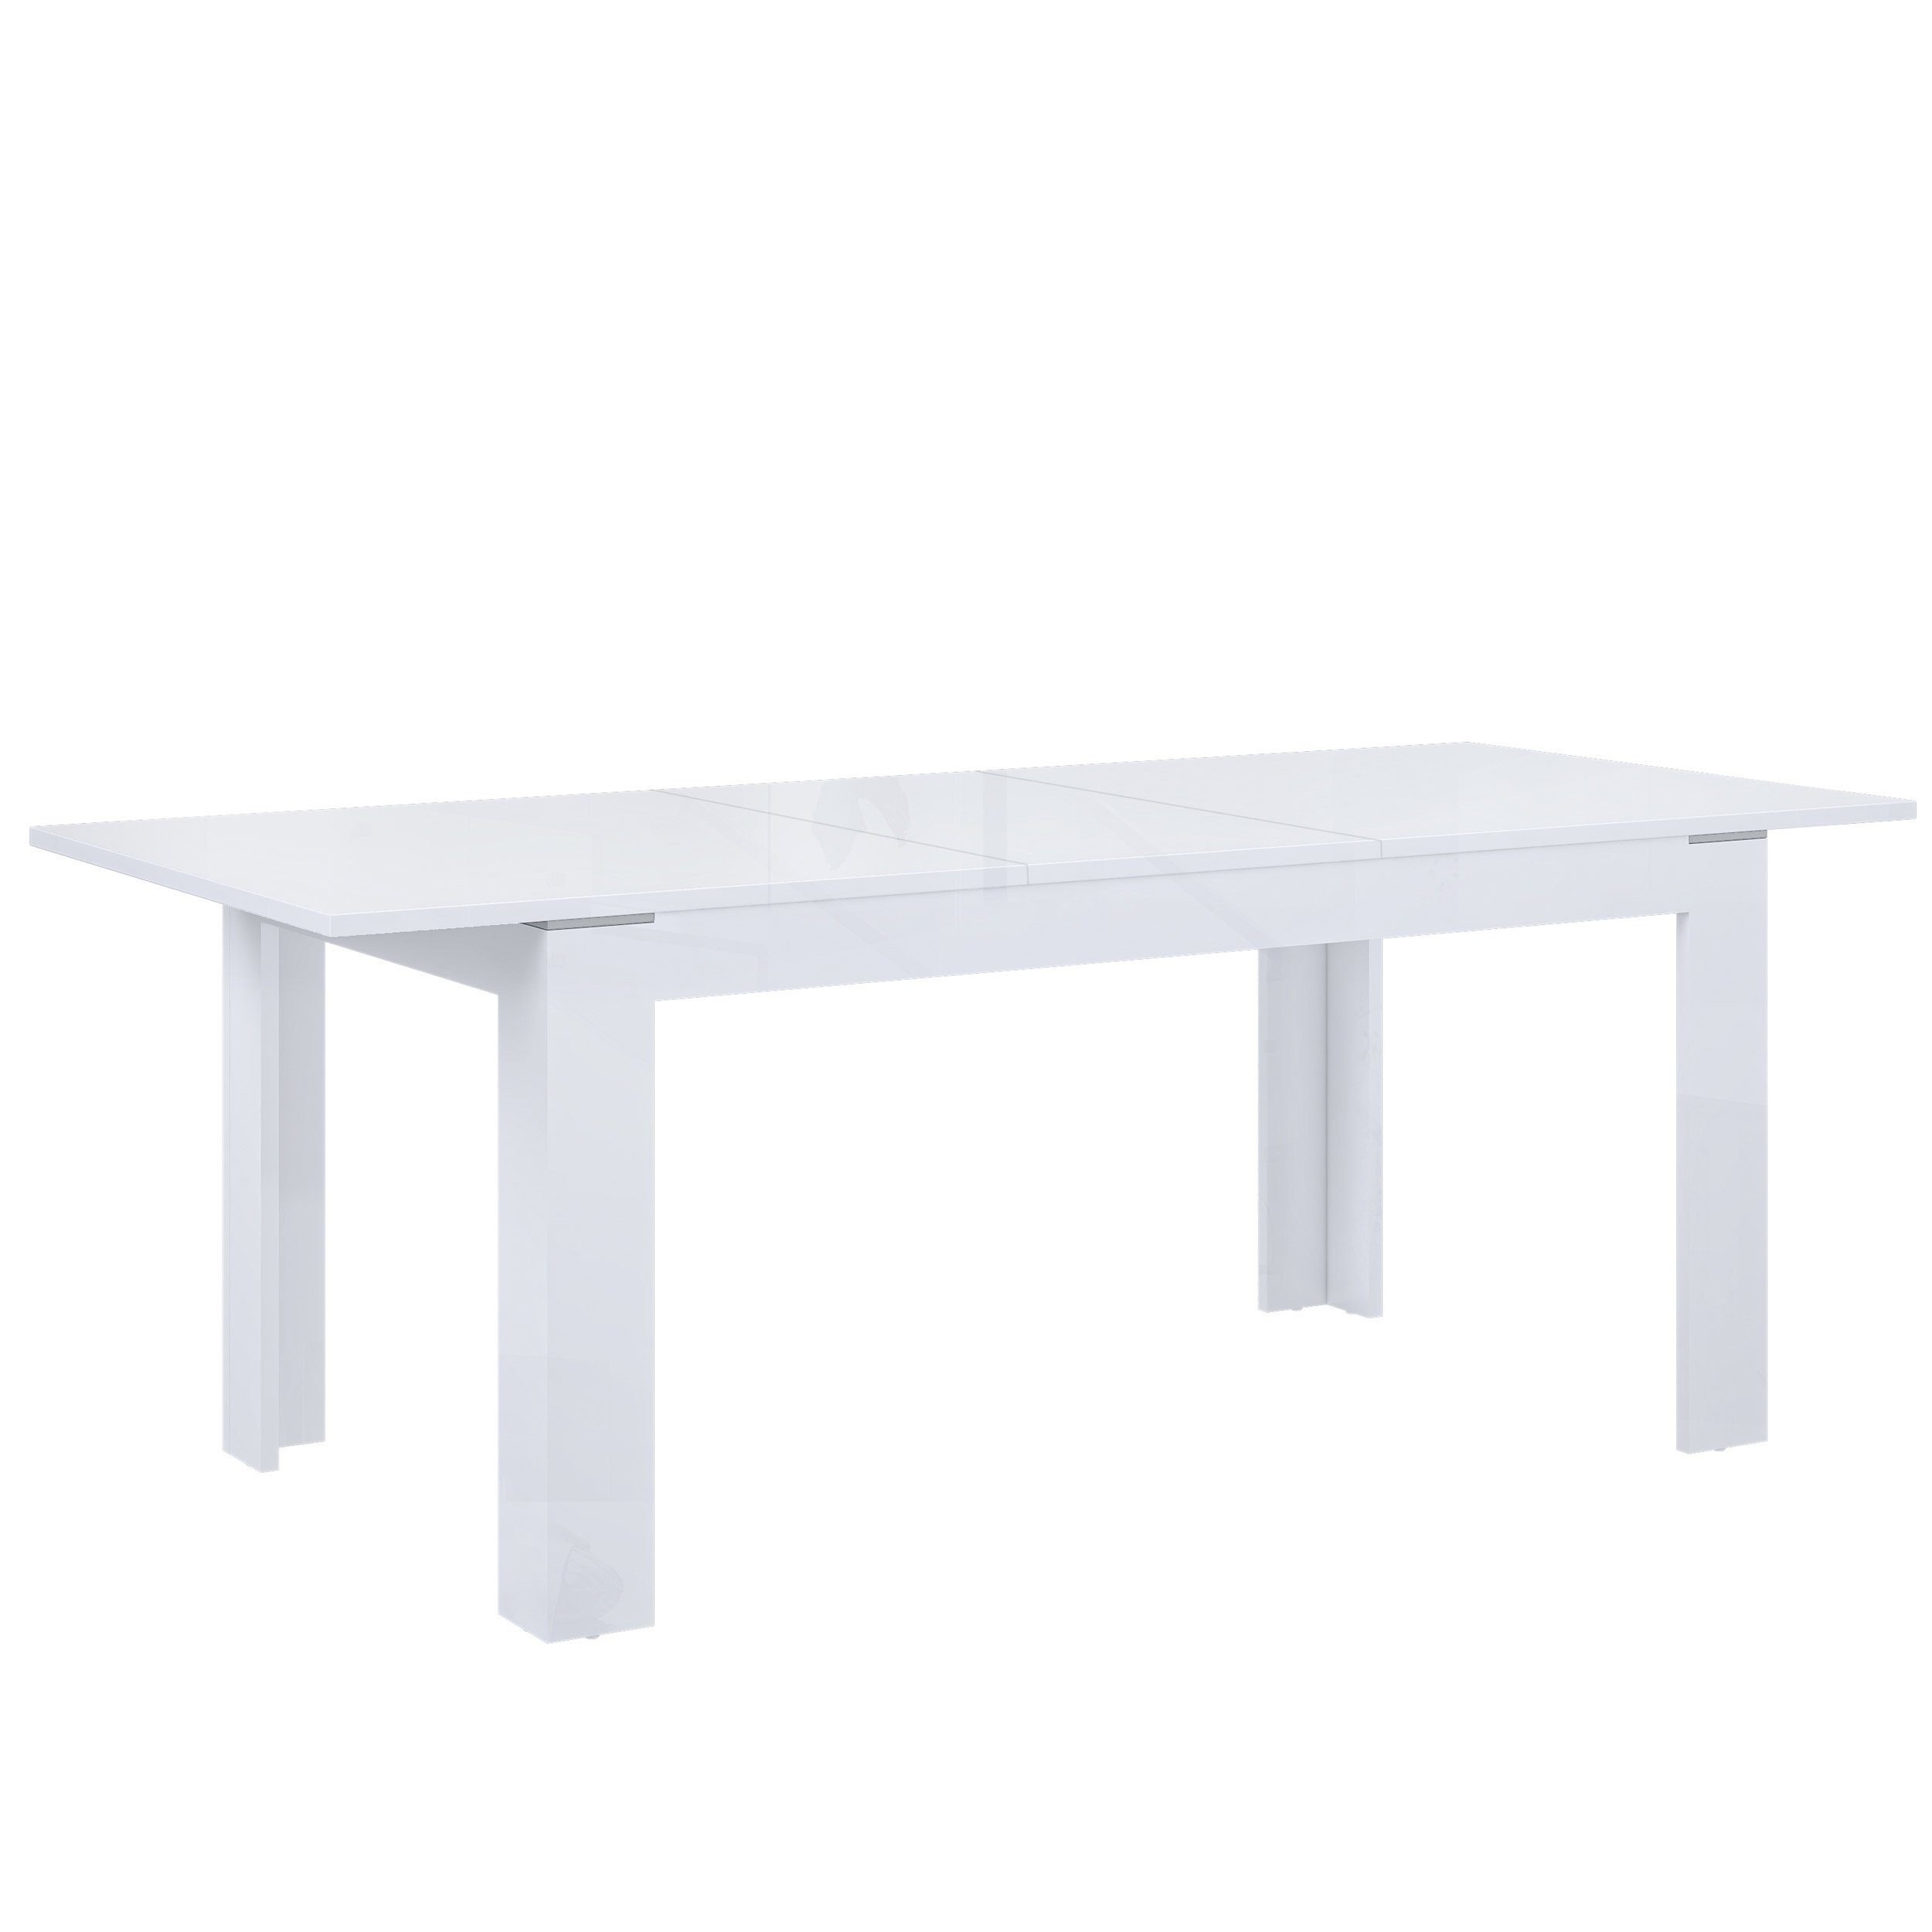 Violetta, Esszimmer Esstisch Weiß Esstisch Ausziehbar Modern Newroom Hochglanz Tisch